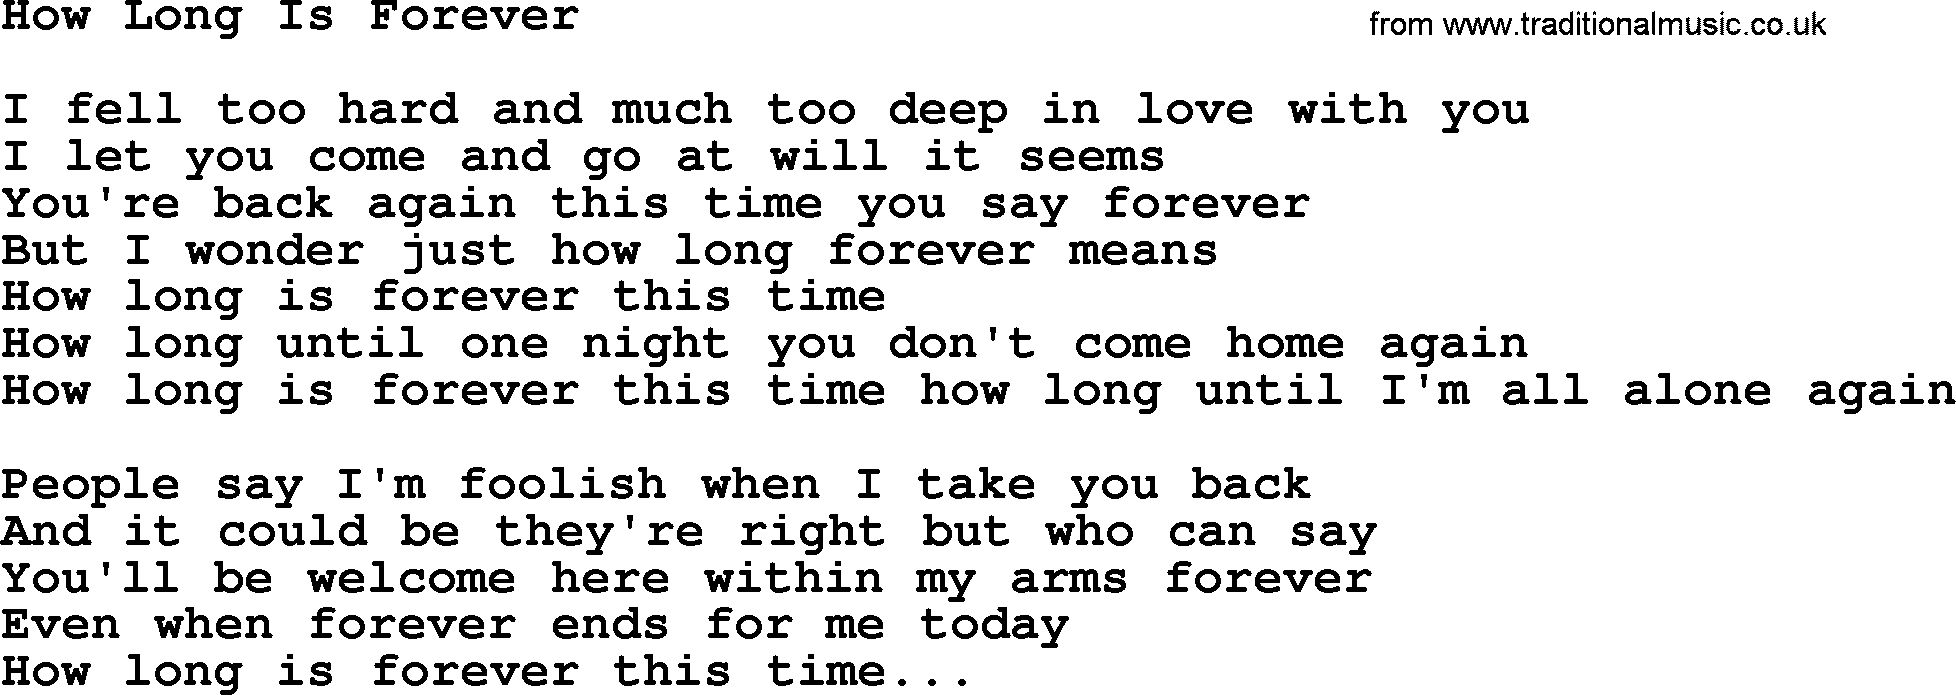 willie-nelson-song-how-long-is-forever-lyrics